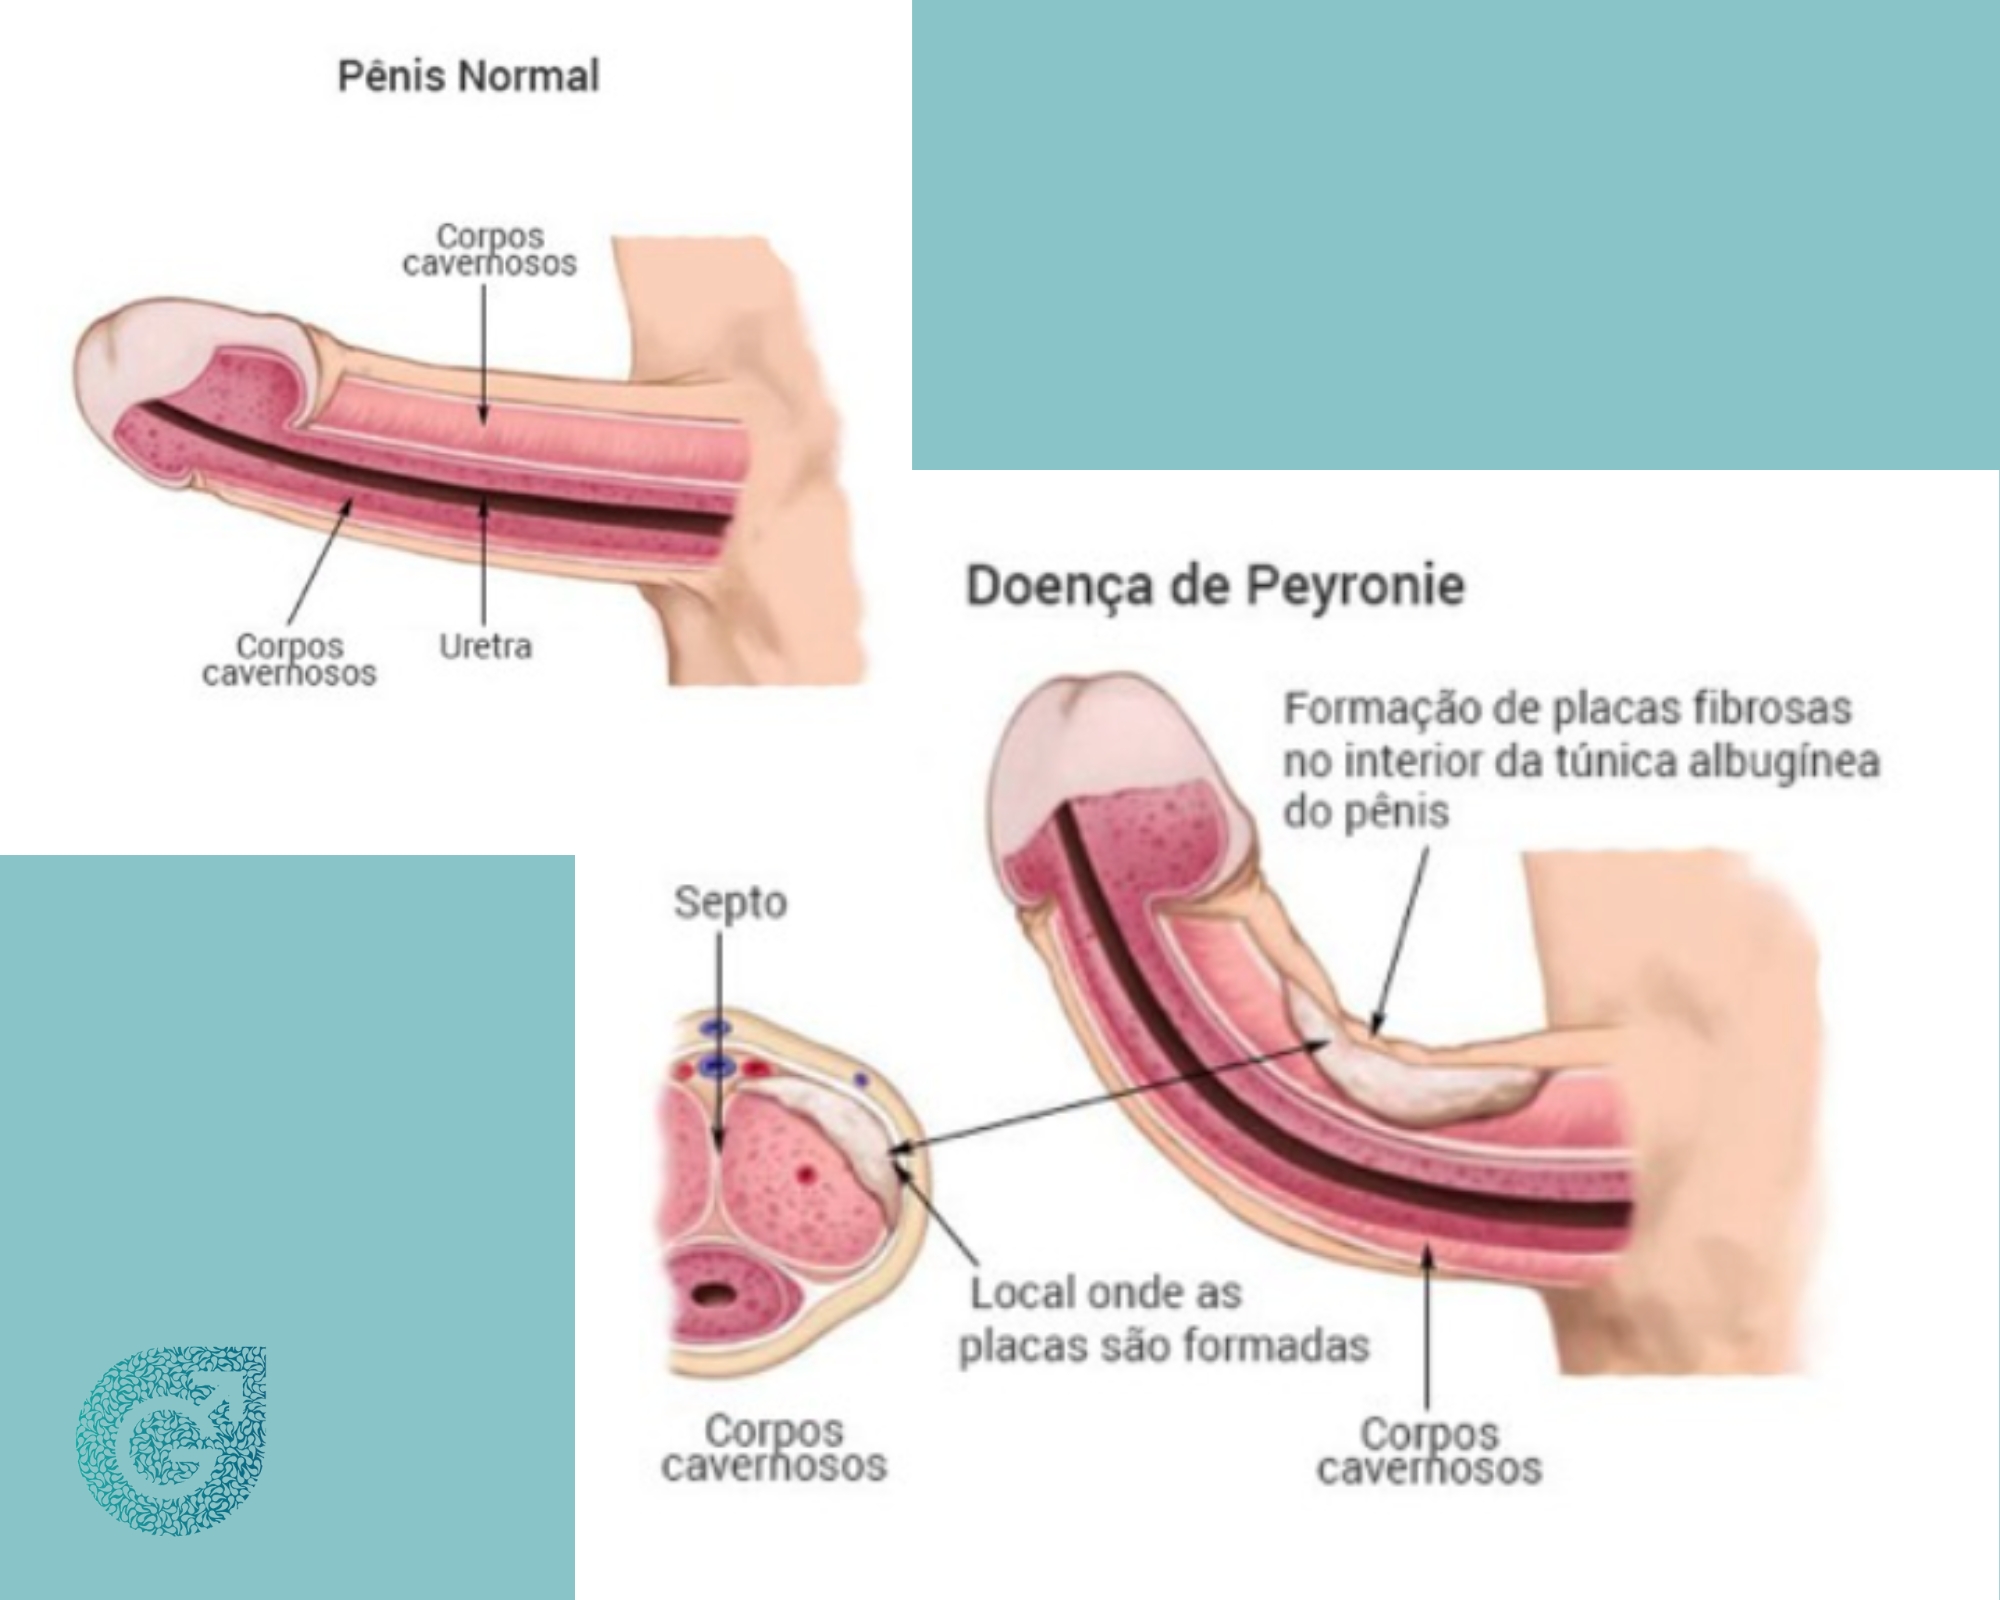 Demonstração da fibrose peniana levando a Doença de Peyronie